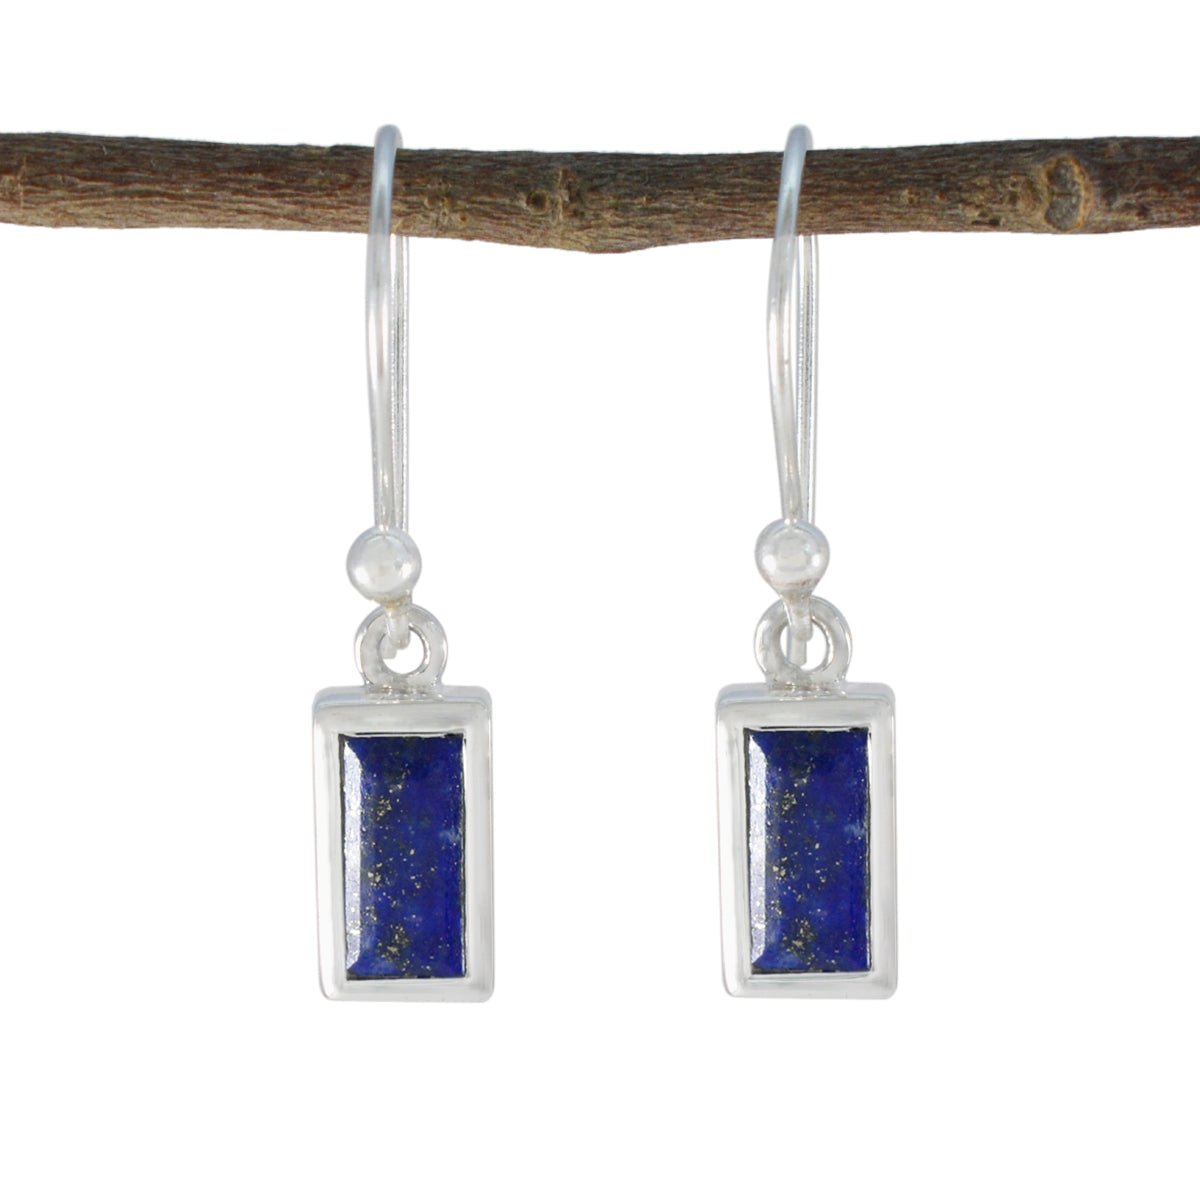 riyo fantastiska sterling silver örhänge för fru lapis lazuli örhänge infattning blå örhänge dingla örhänge